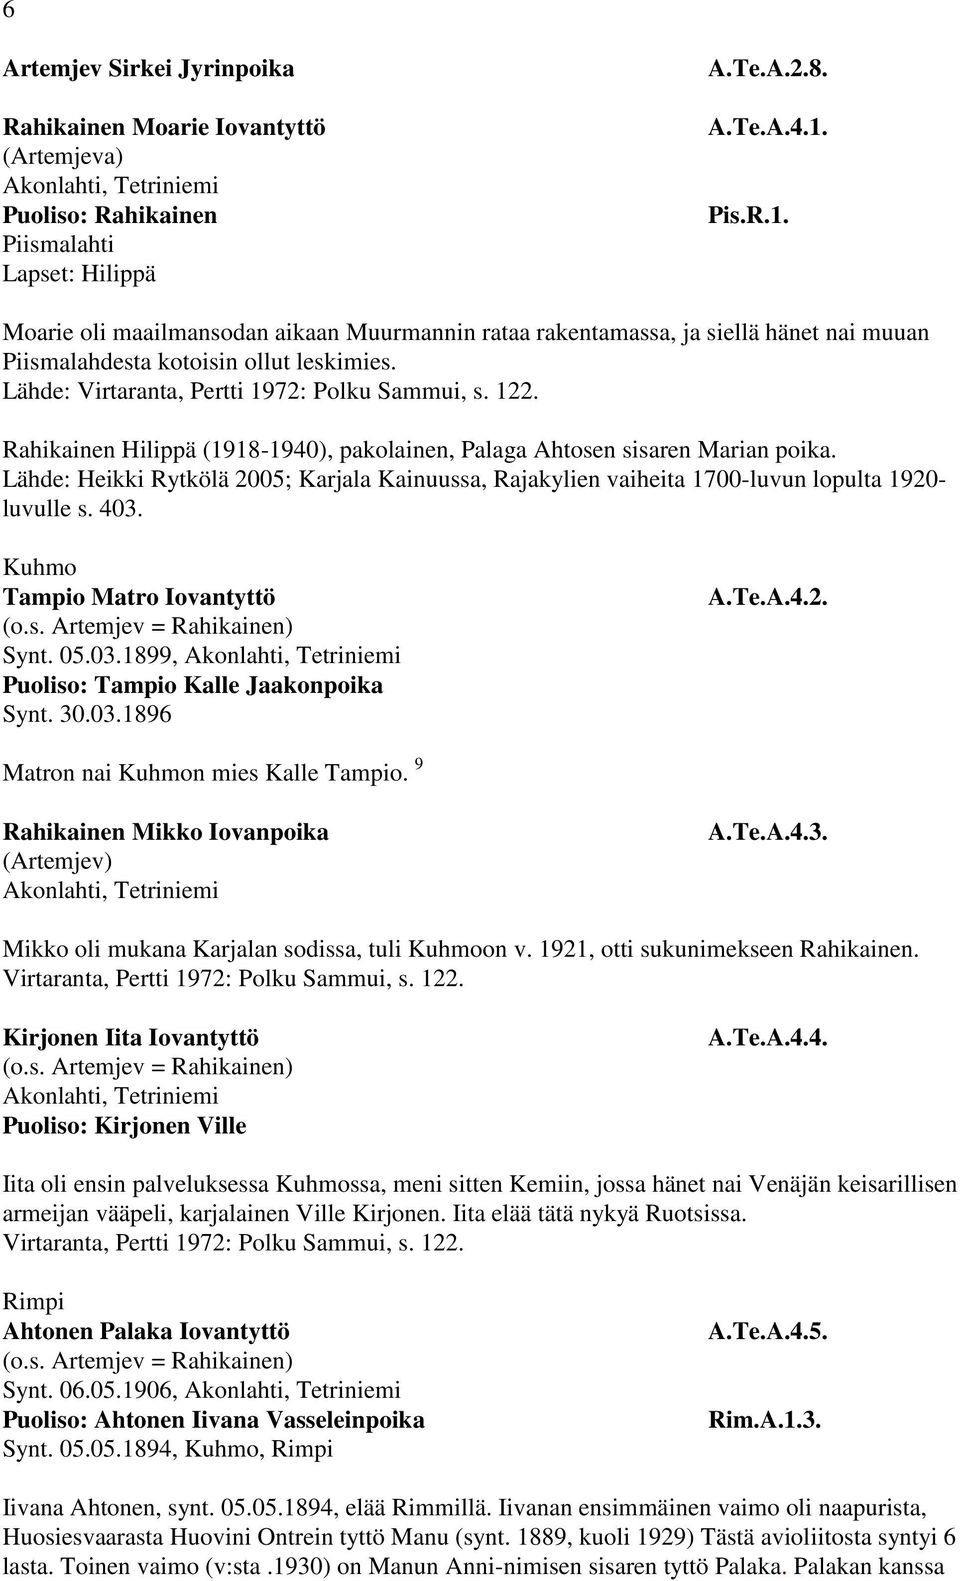 Rahikainen Hilippä (1918-1940), pakolainen, Palaga Ahtosen sisaren Marian poika. Lähde: Heikki Rytkölä 2005; Karjala Kainuussa, Rajakylien vaiheita 1700-luvun lopulta 1920- luvulle s. 403.